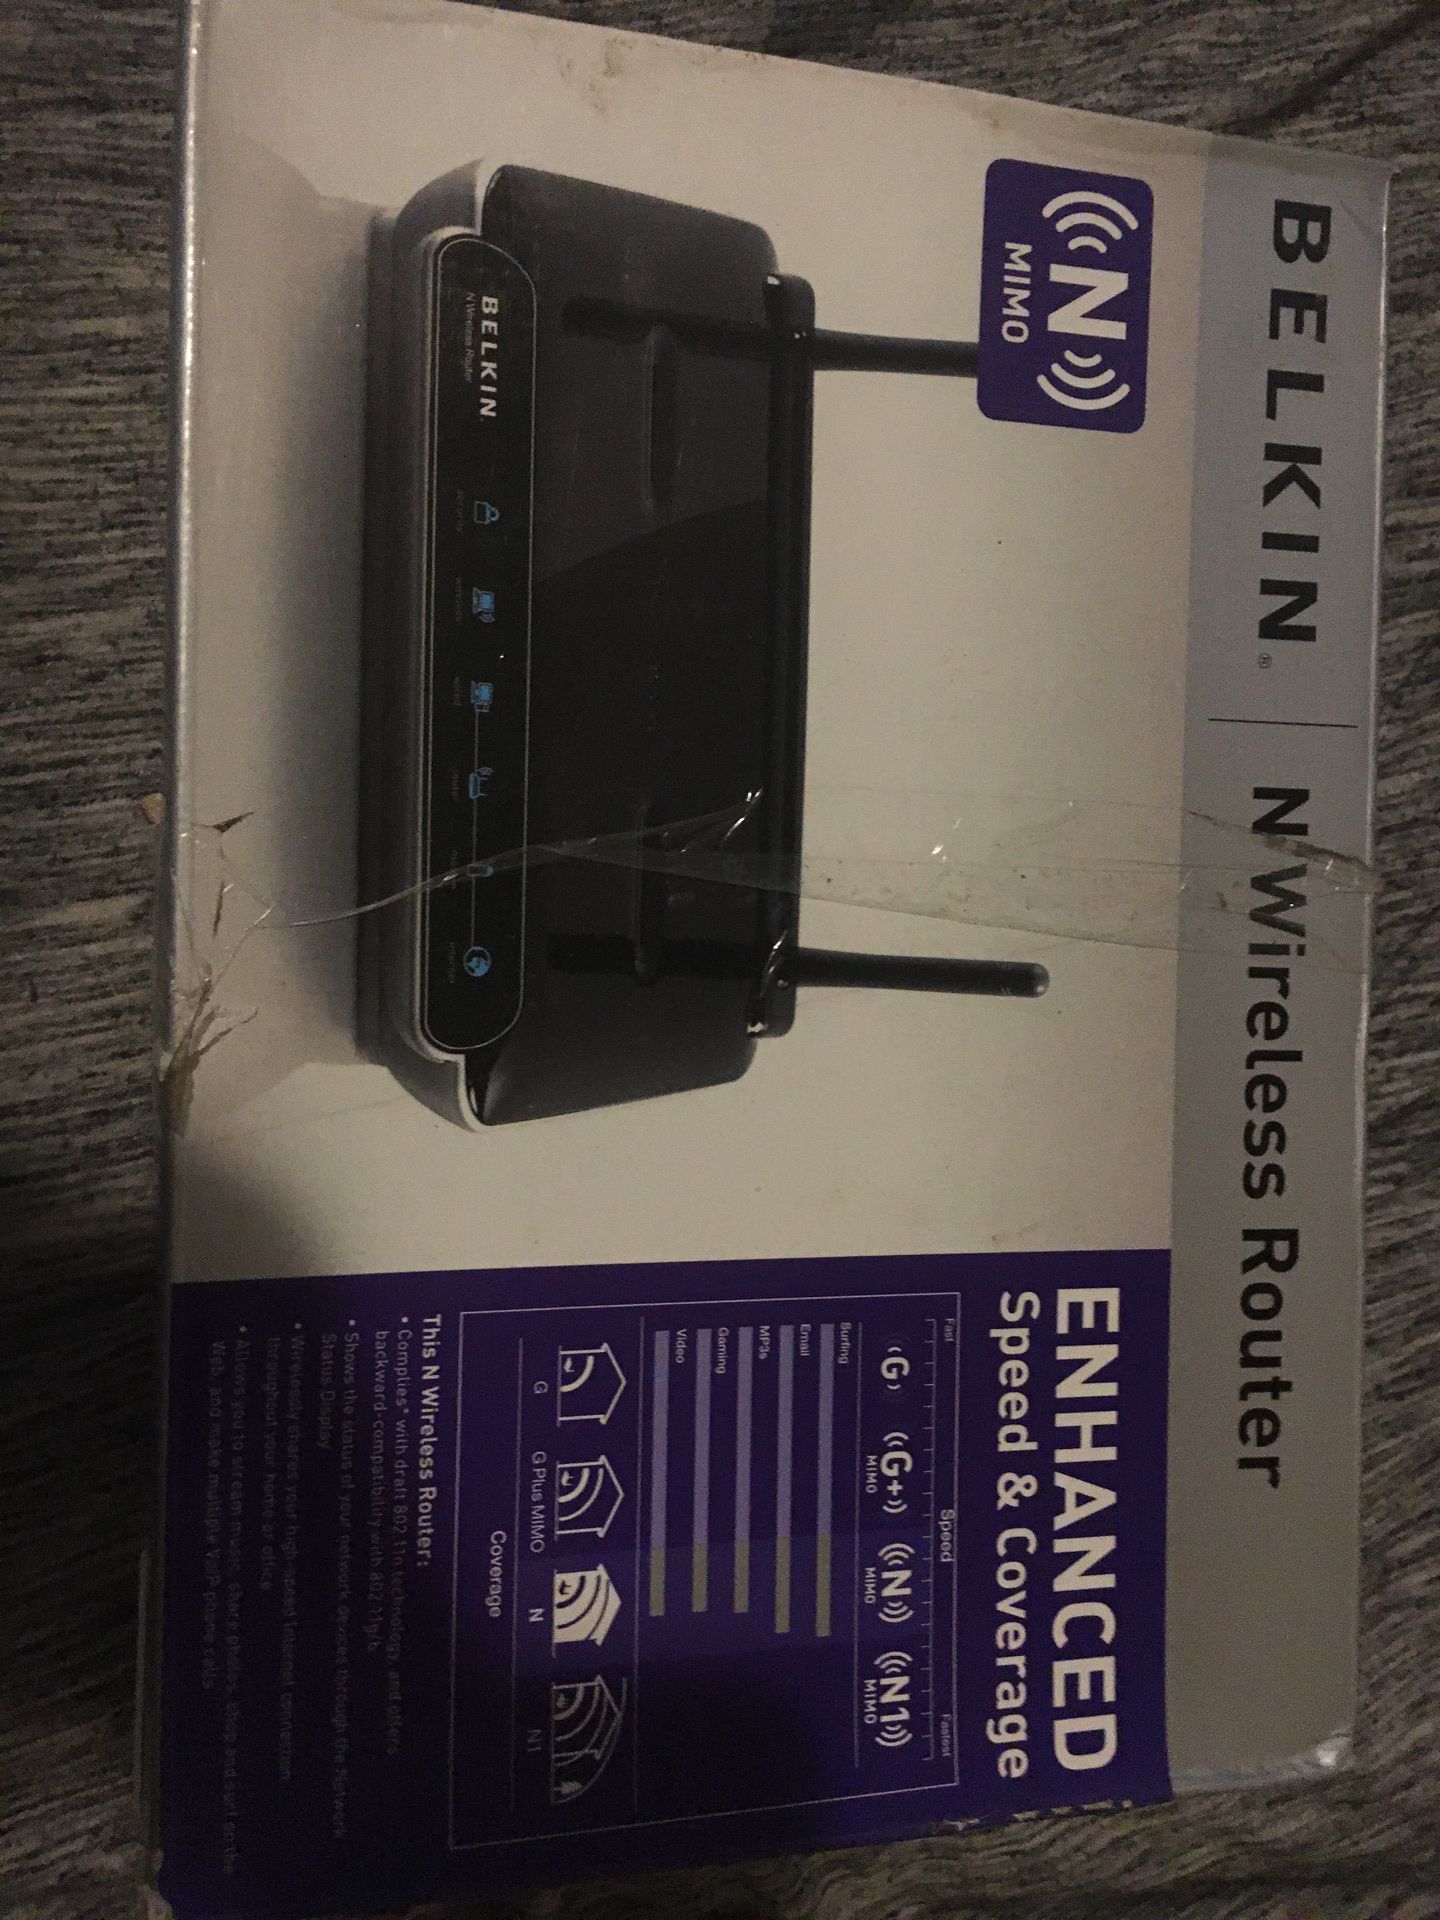 Belkin n wireless router